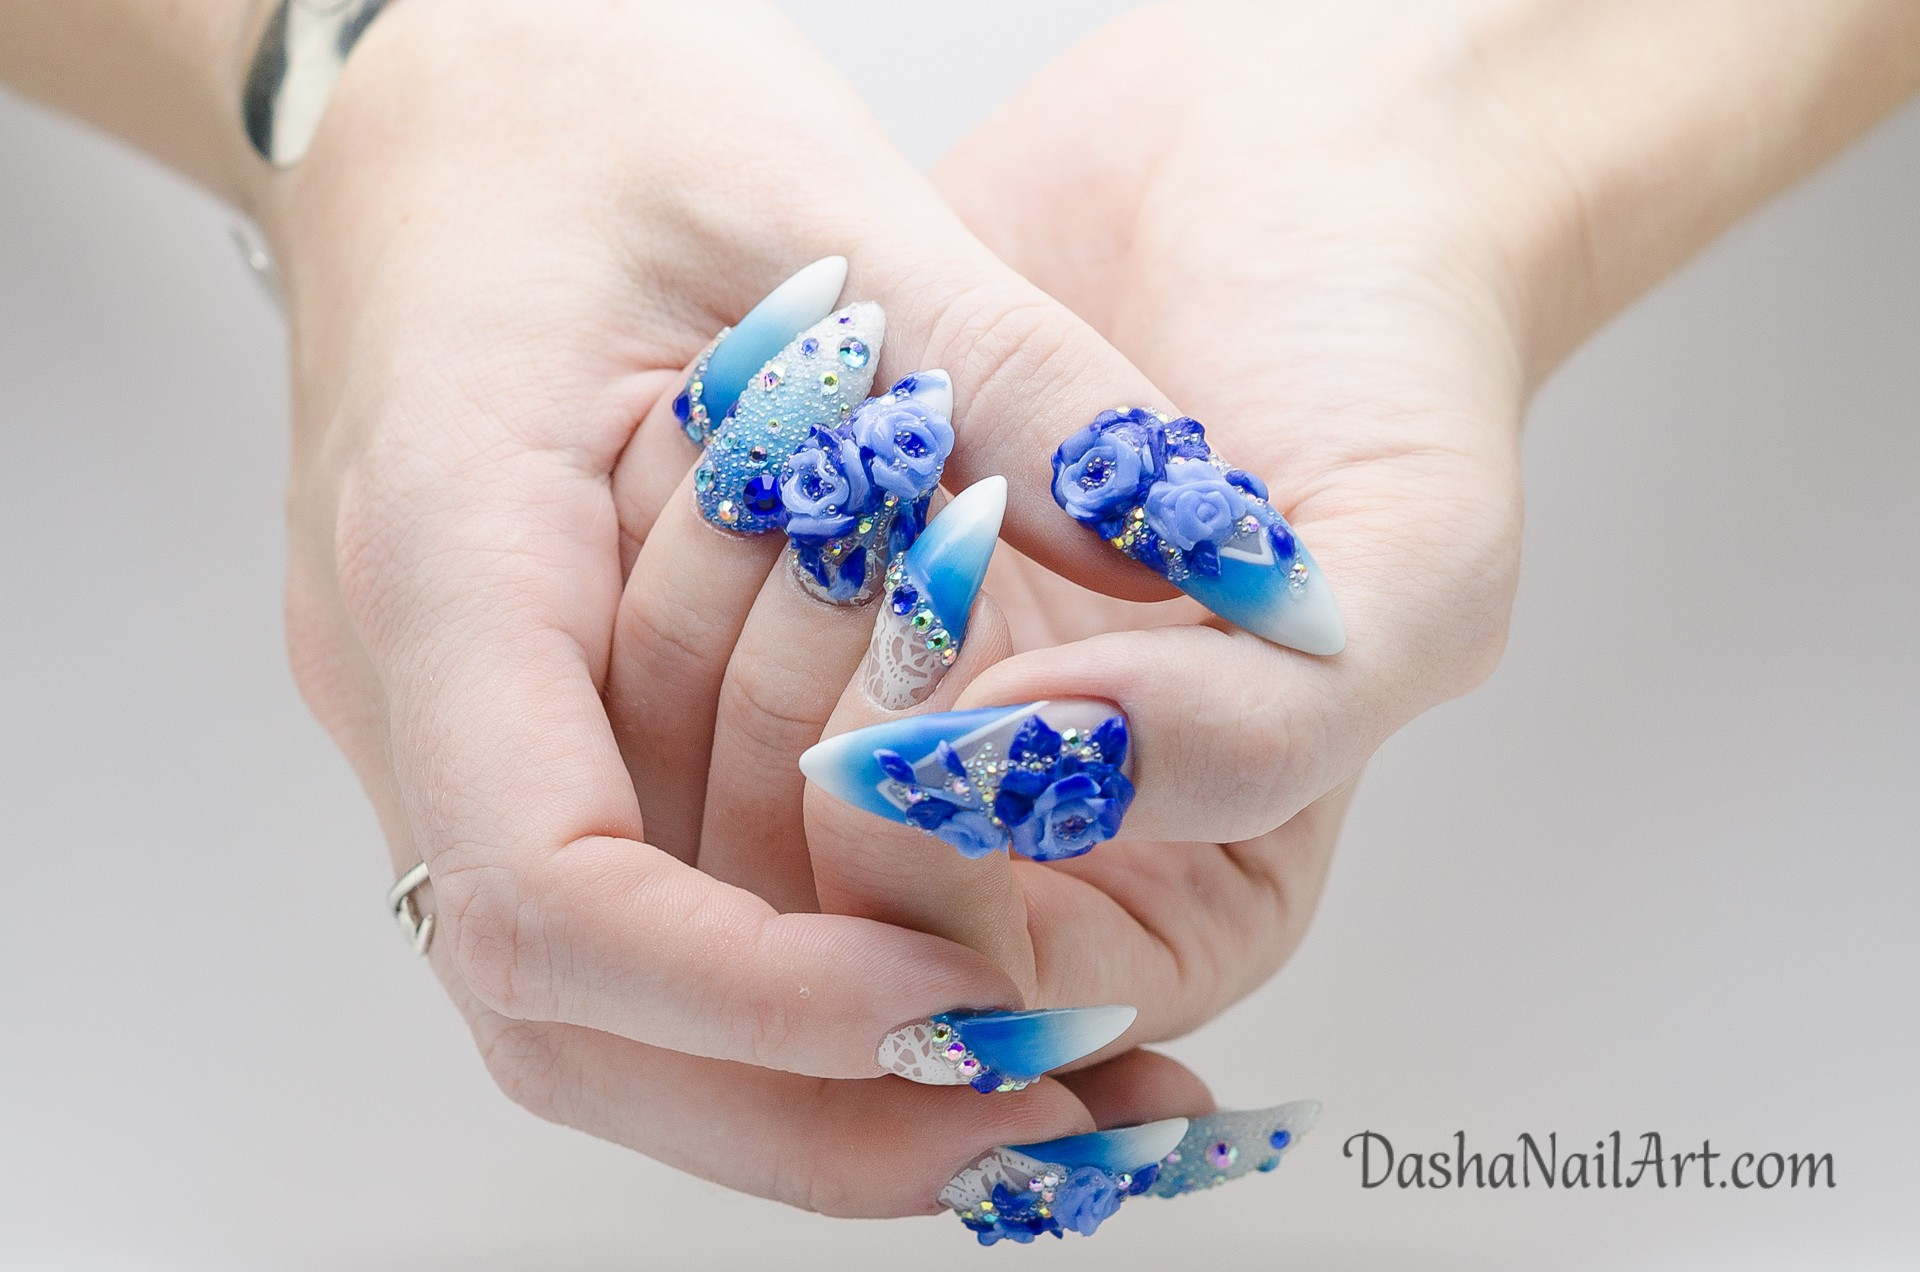 nail màu xanh dương nhạt đắp hoa